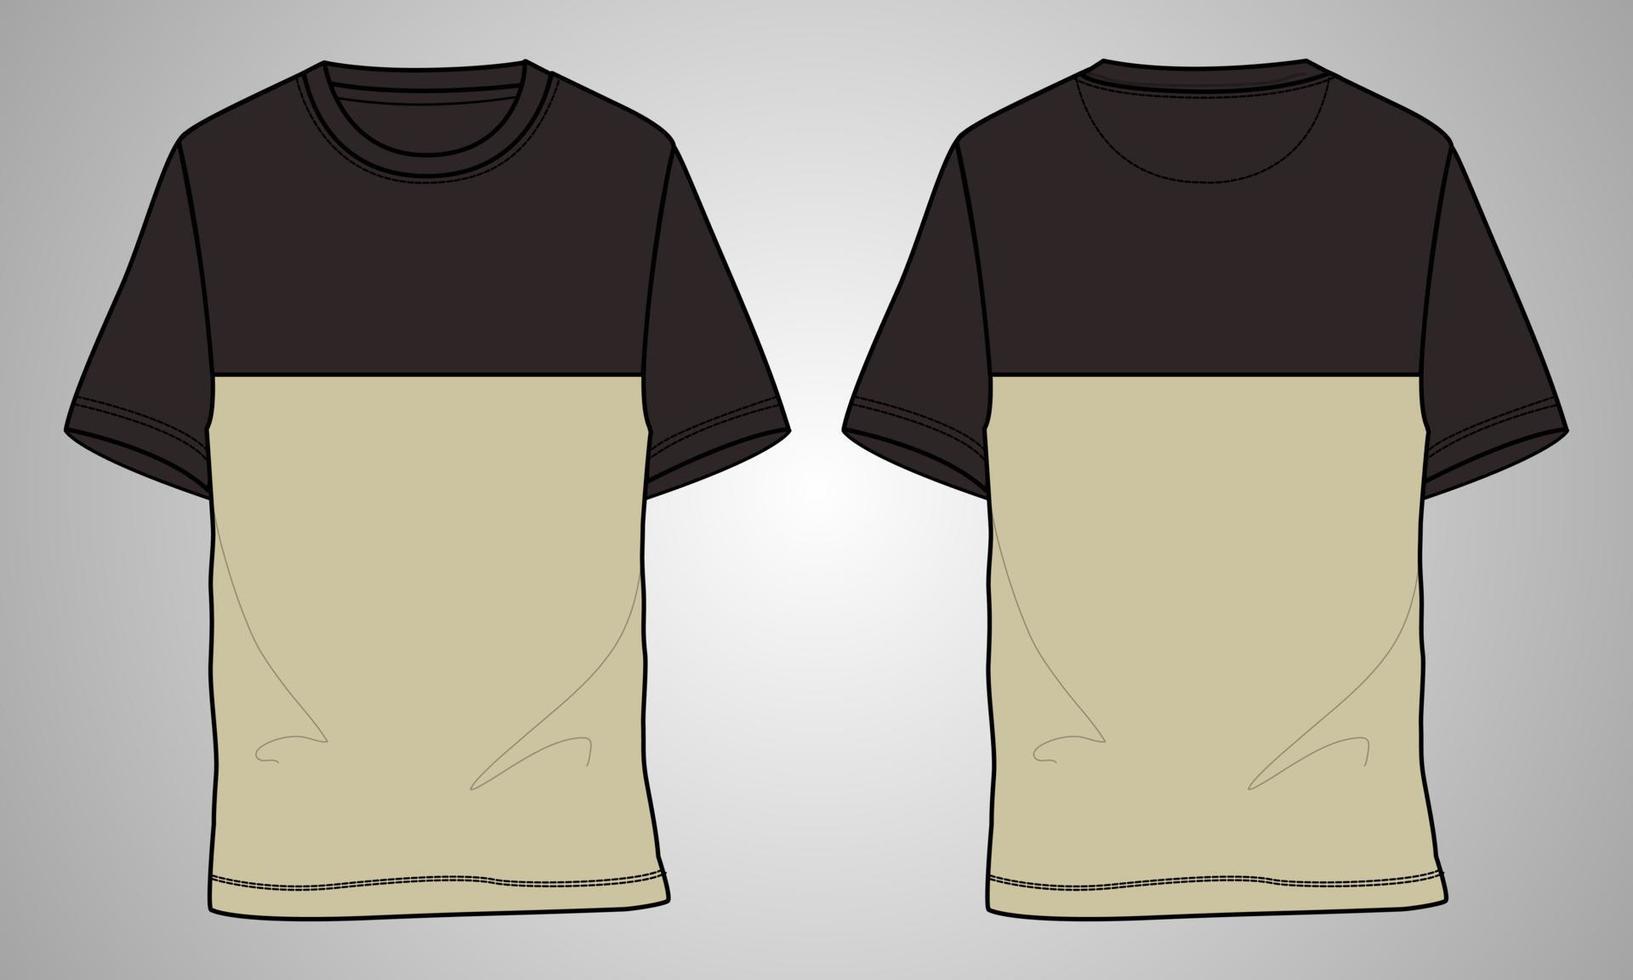 camiseta de manga curta modelo de ilustração vetorial de desenho plano de moda técnica vista frontal e traseira vetor